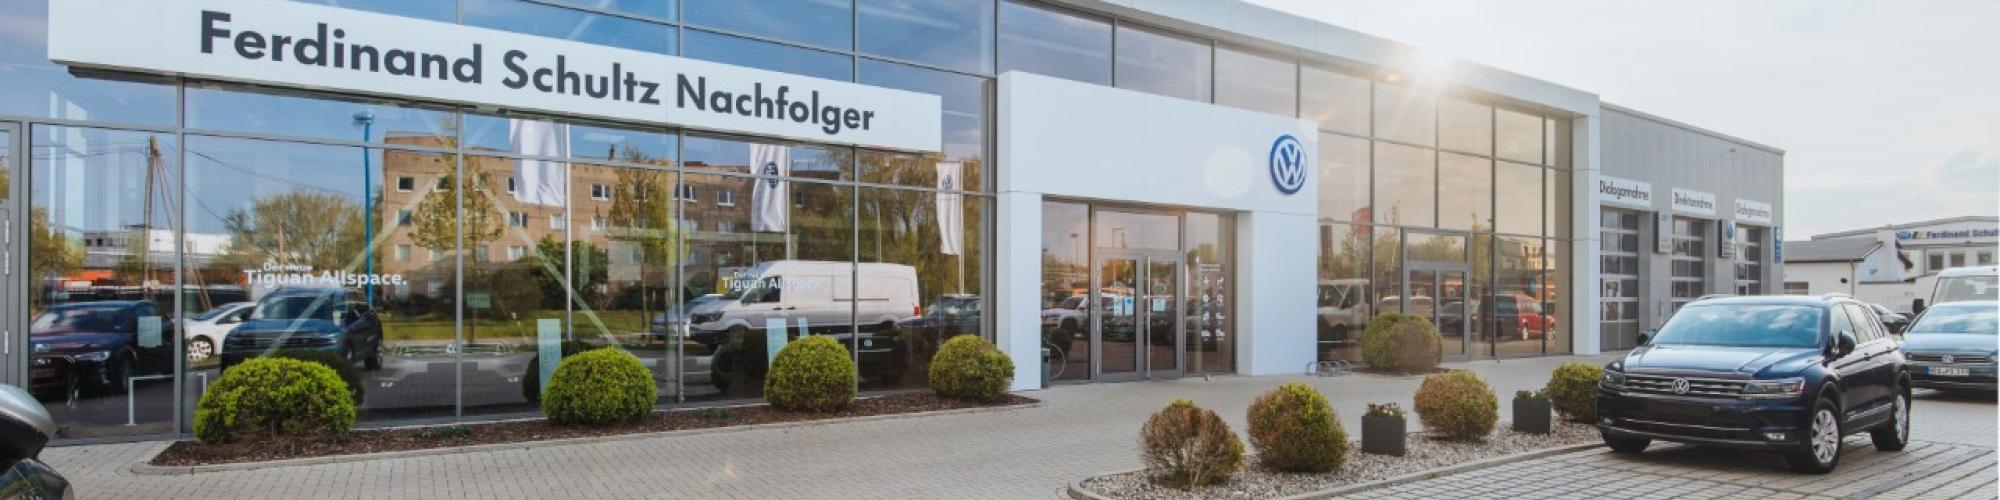 Ferdinand Schultz Nachfolger Autohaus GmbH & Co.KG